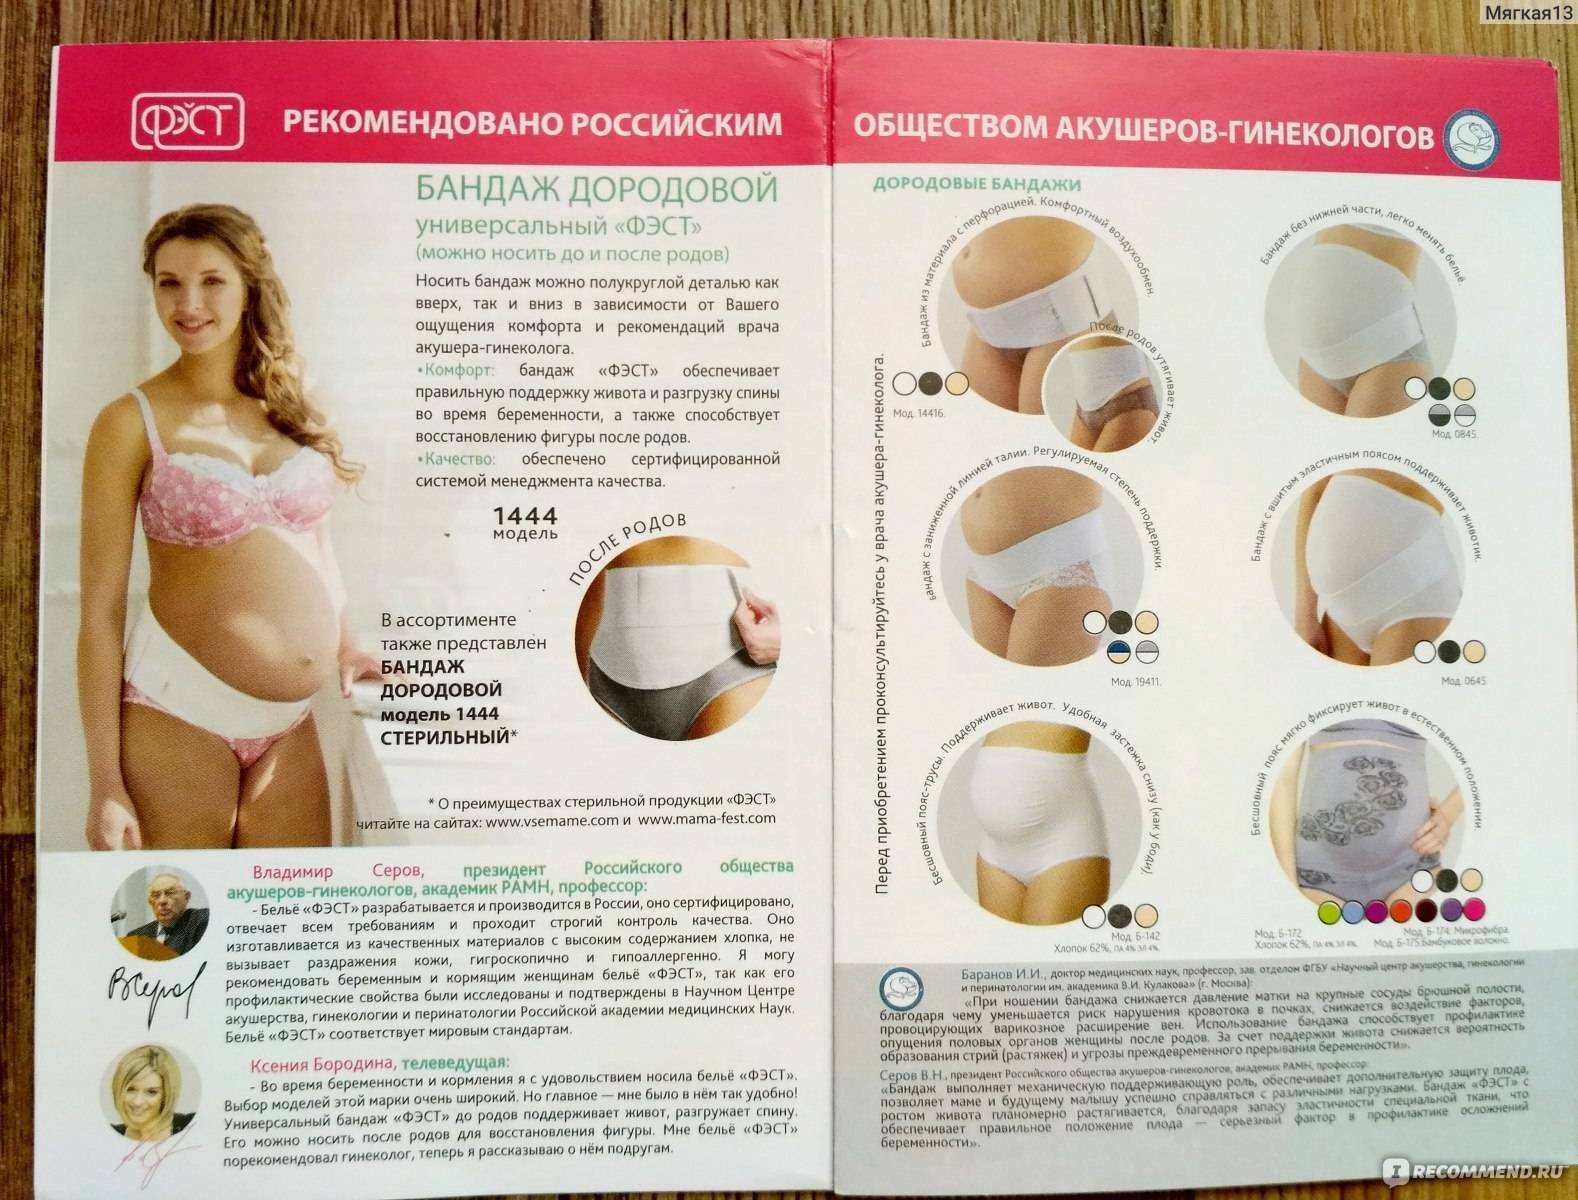 Как правильно носить дородовый бандаж для беременных :: syl.ru